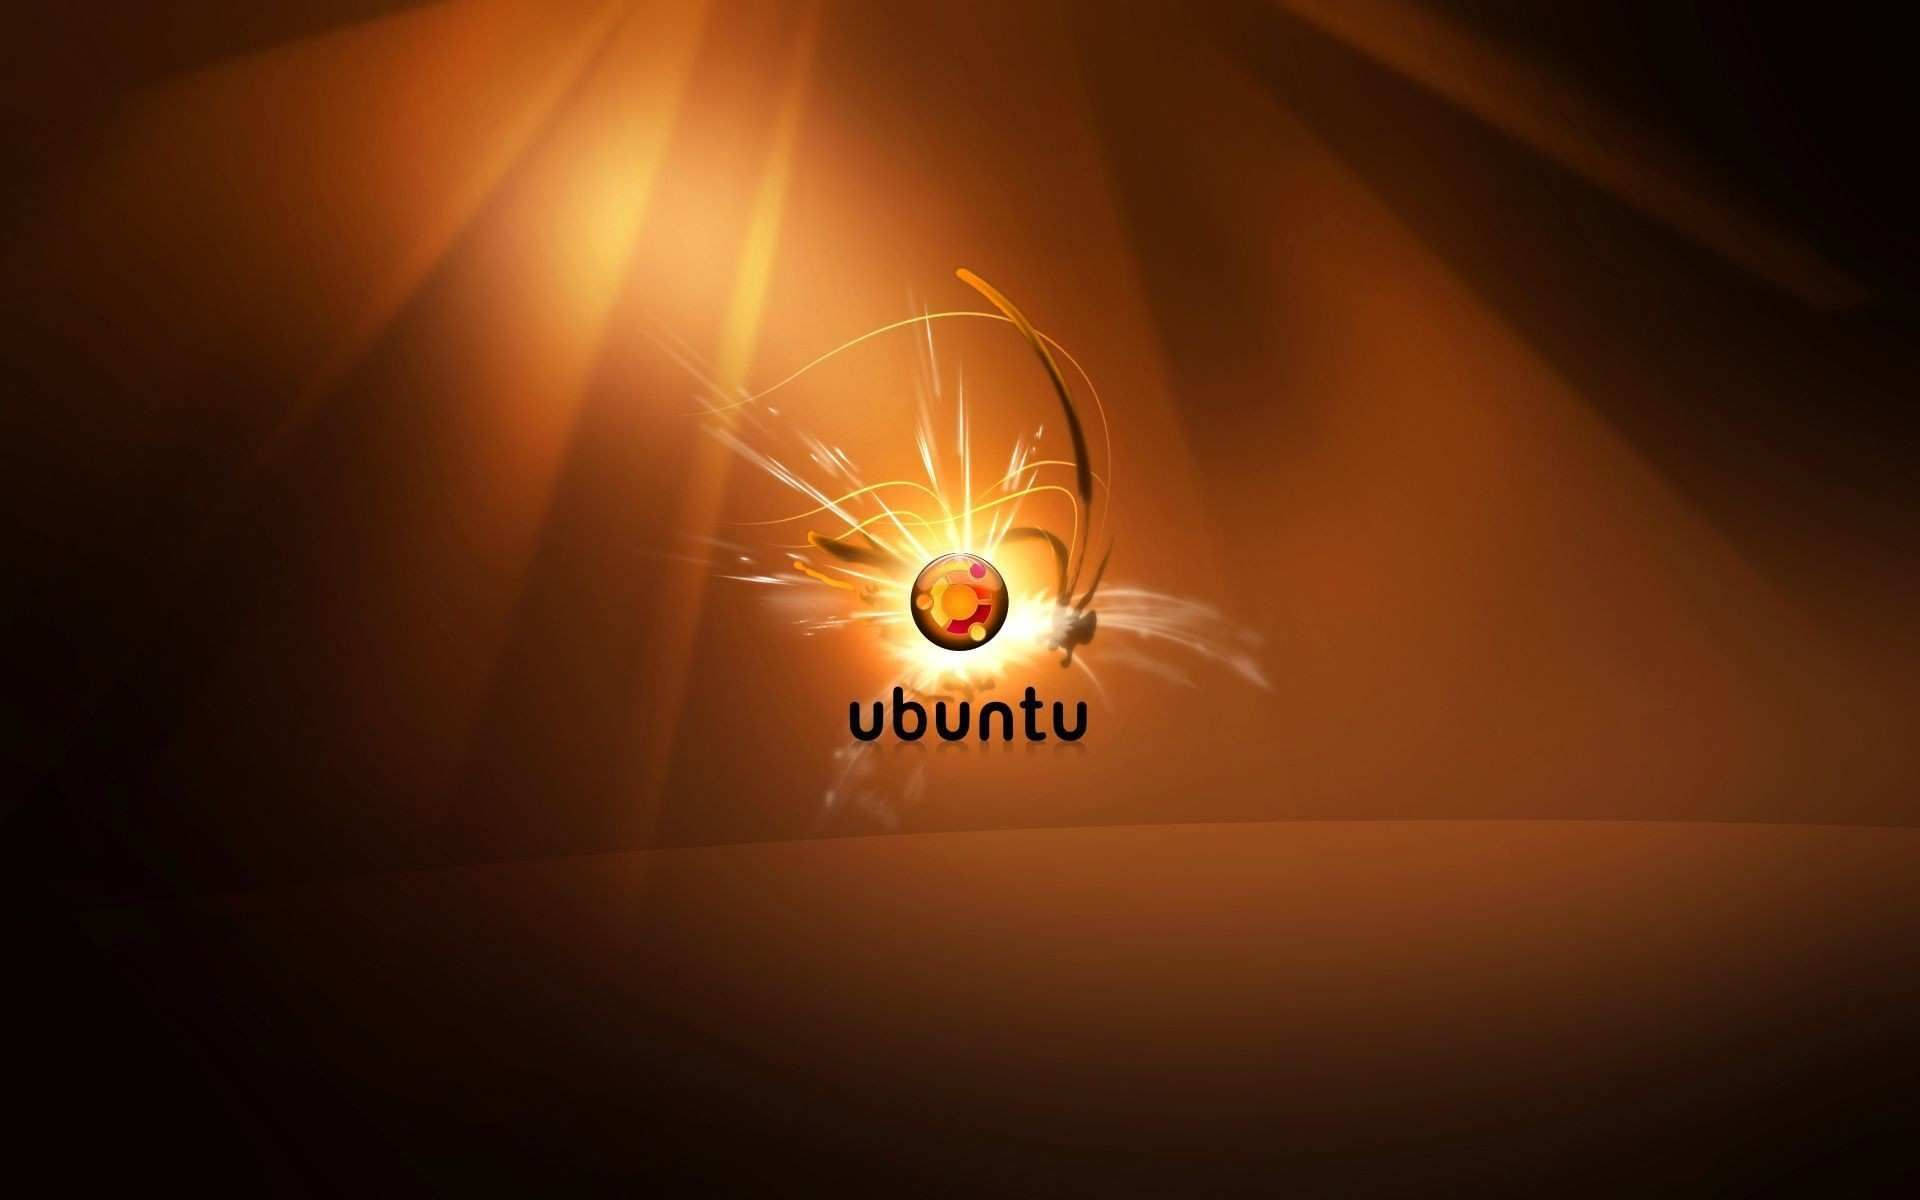 Ubuntu In Golden Flashing Logo Wallpaper